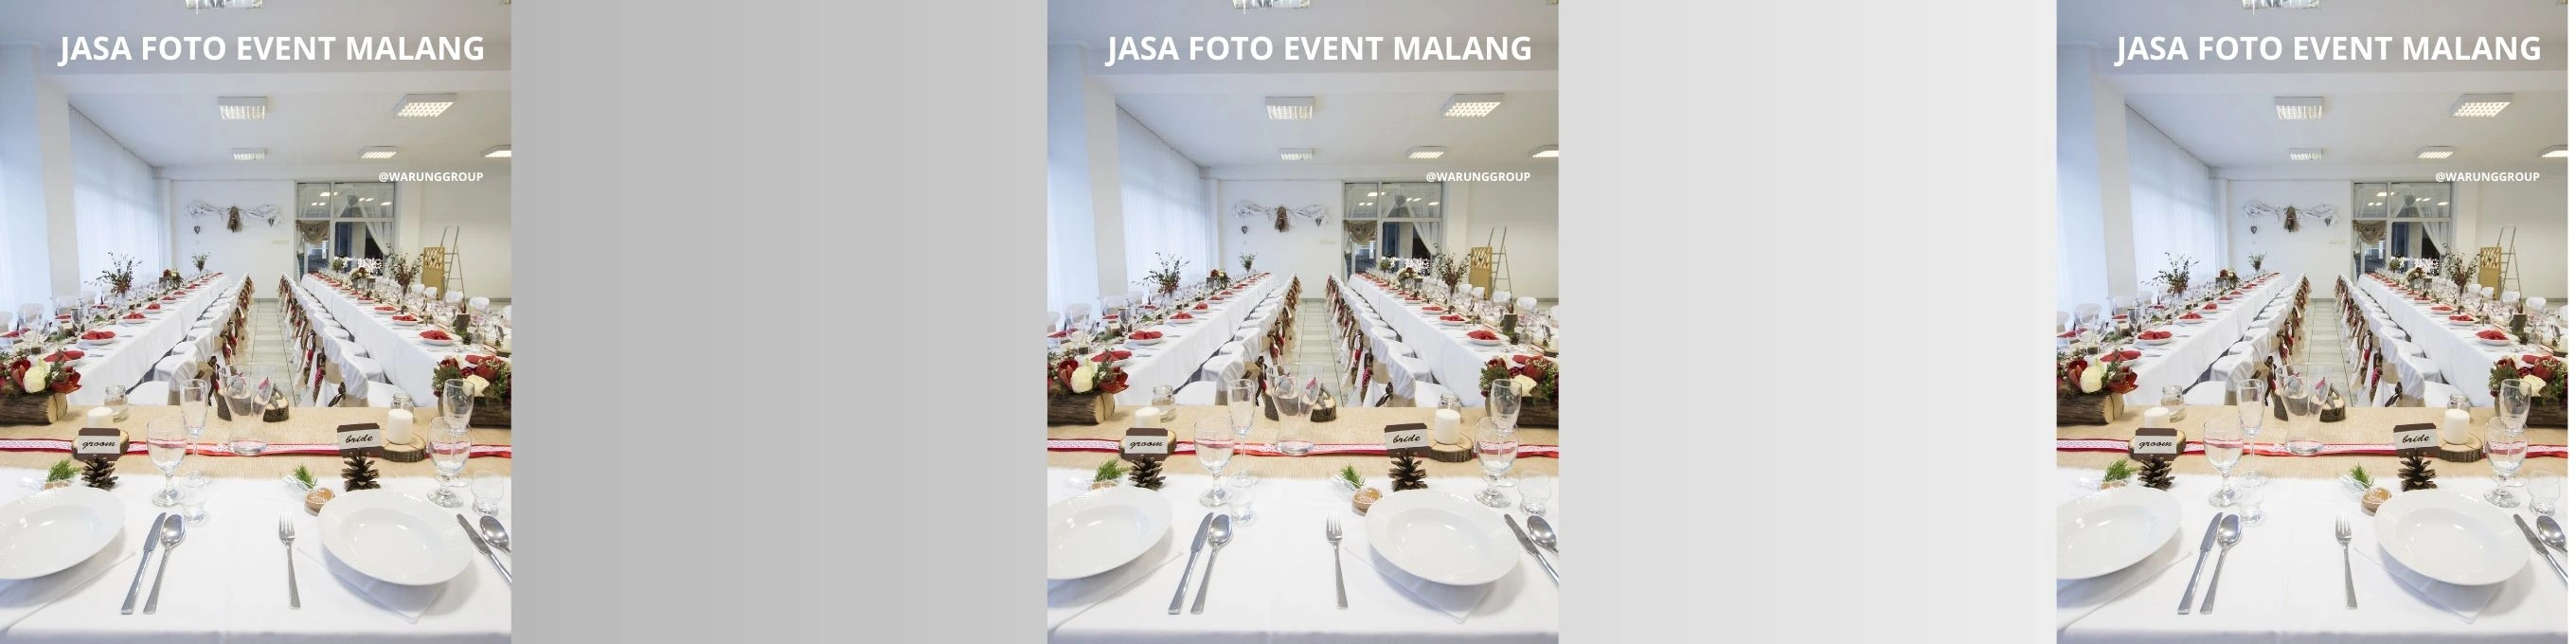 Jasa Foto Event Malang